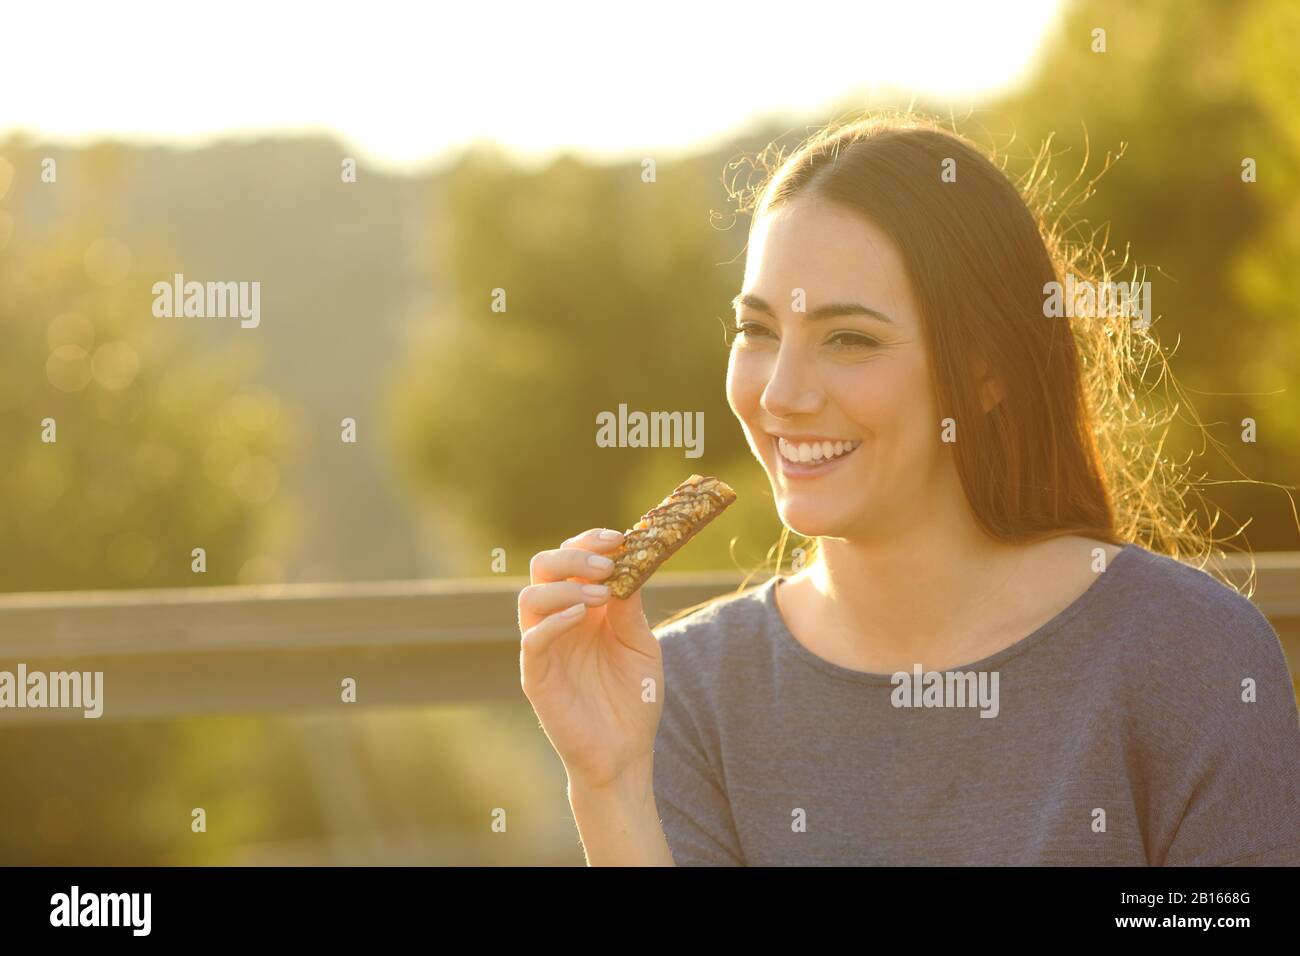 Fröhliche Frau, die bei Sonnenuntergang in einem Park eine Getreidebar auf einer Bank isst Stockfoto